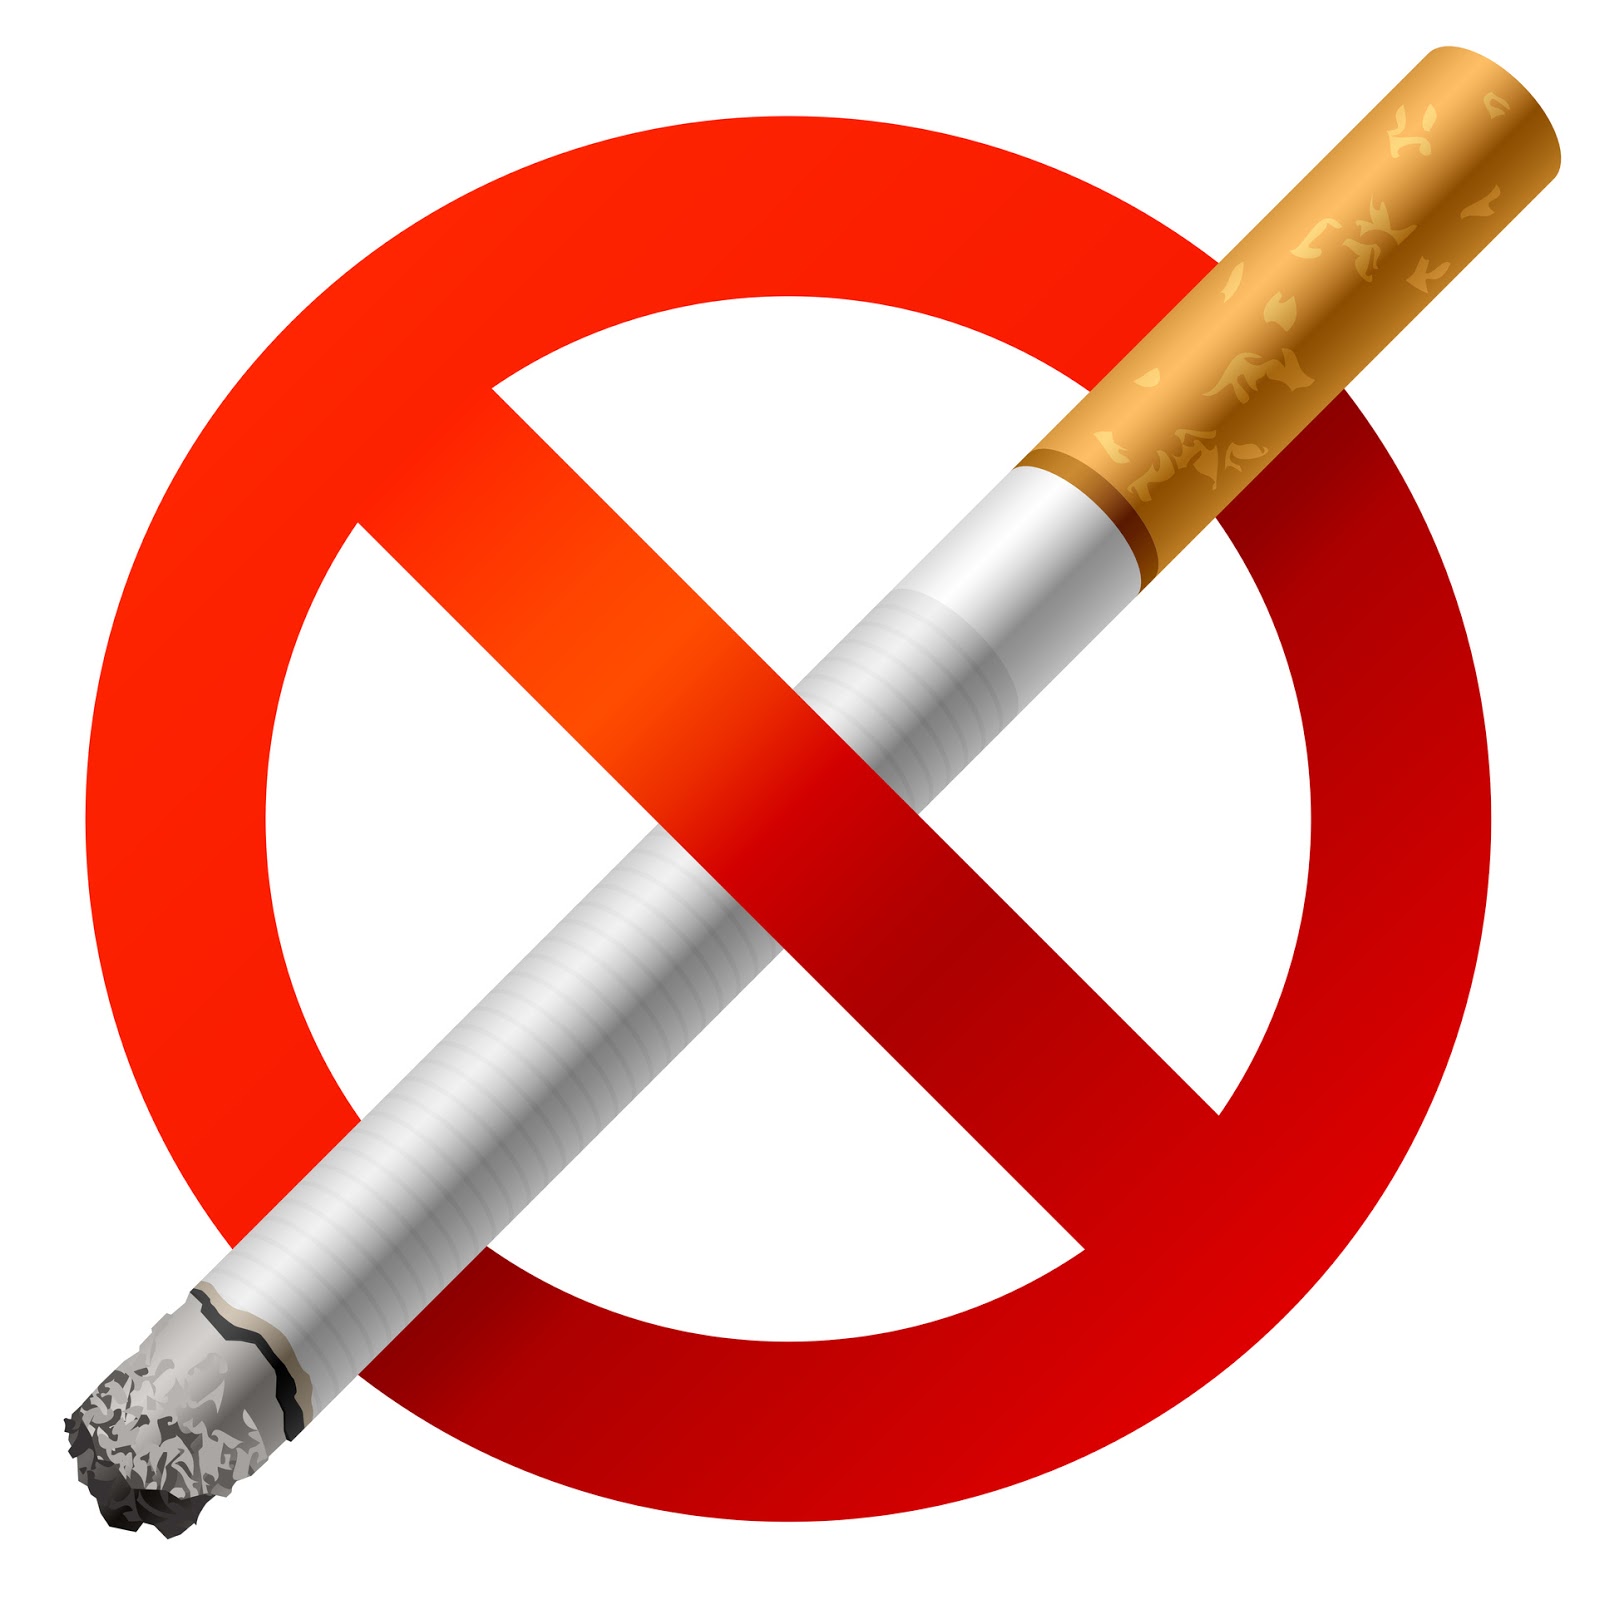 Ինչպե՞ս հրաժարվել ծխախոտից, երբ գիտակցում ես վտանգը. մանրամասնում է թերապևտ Աննա Մարտիրոսյանը